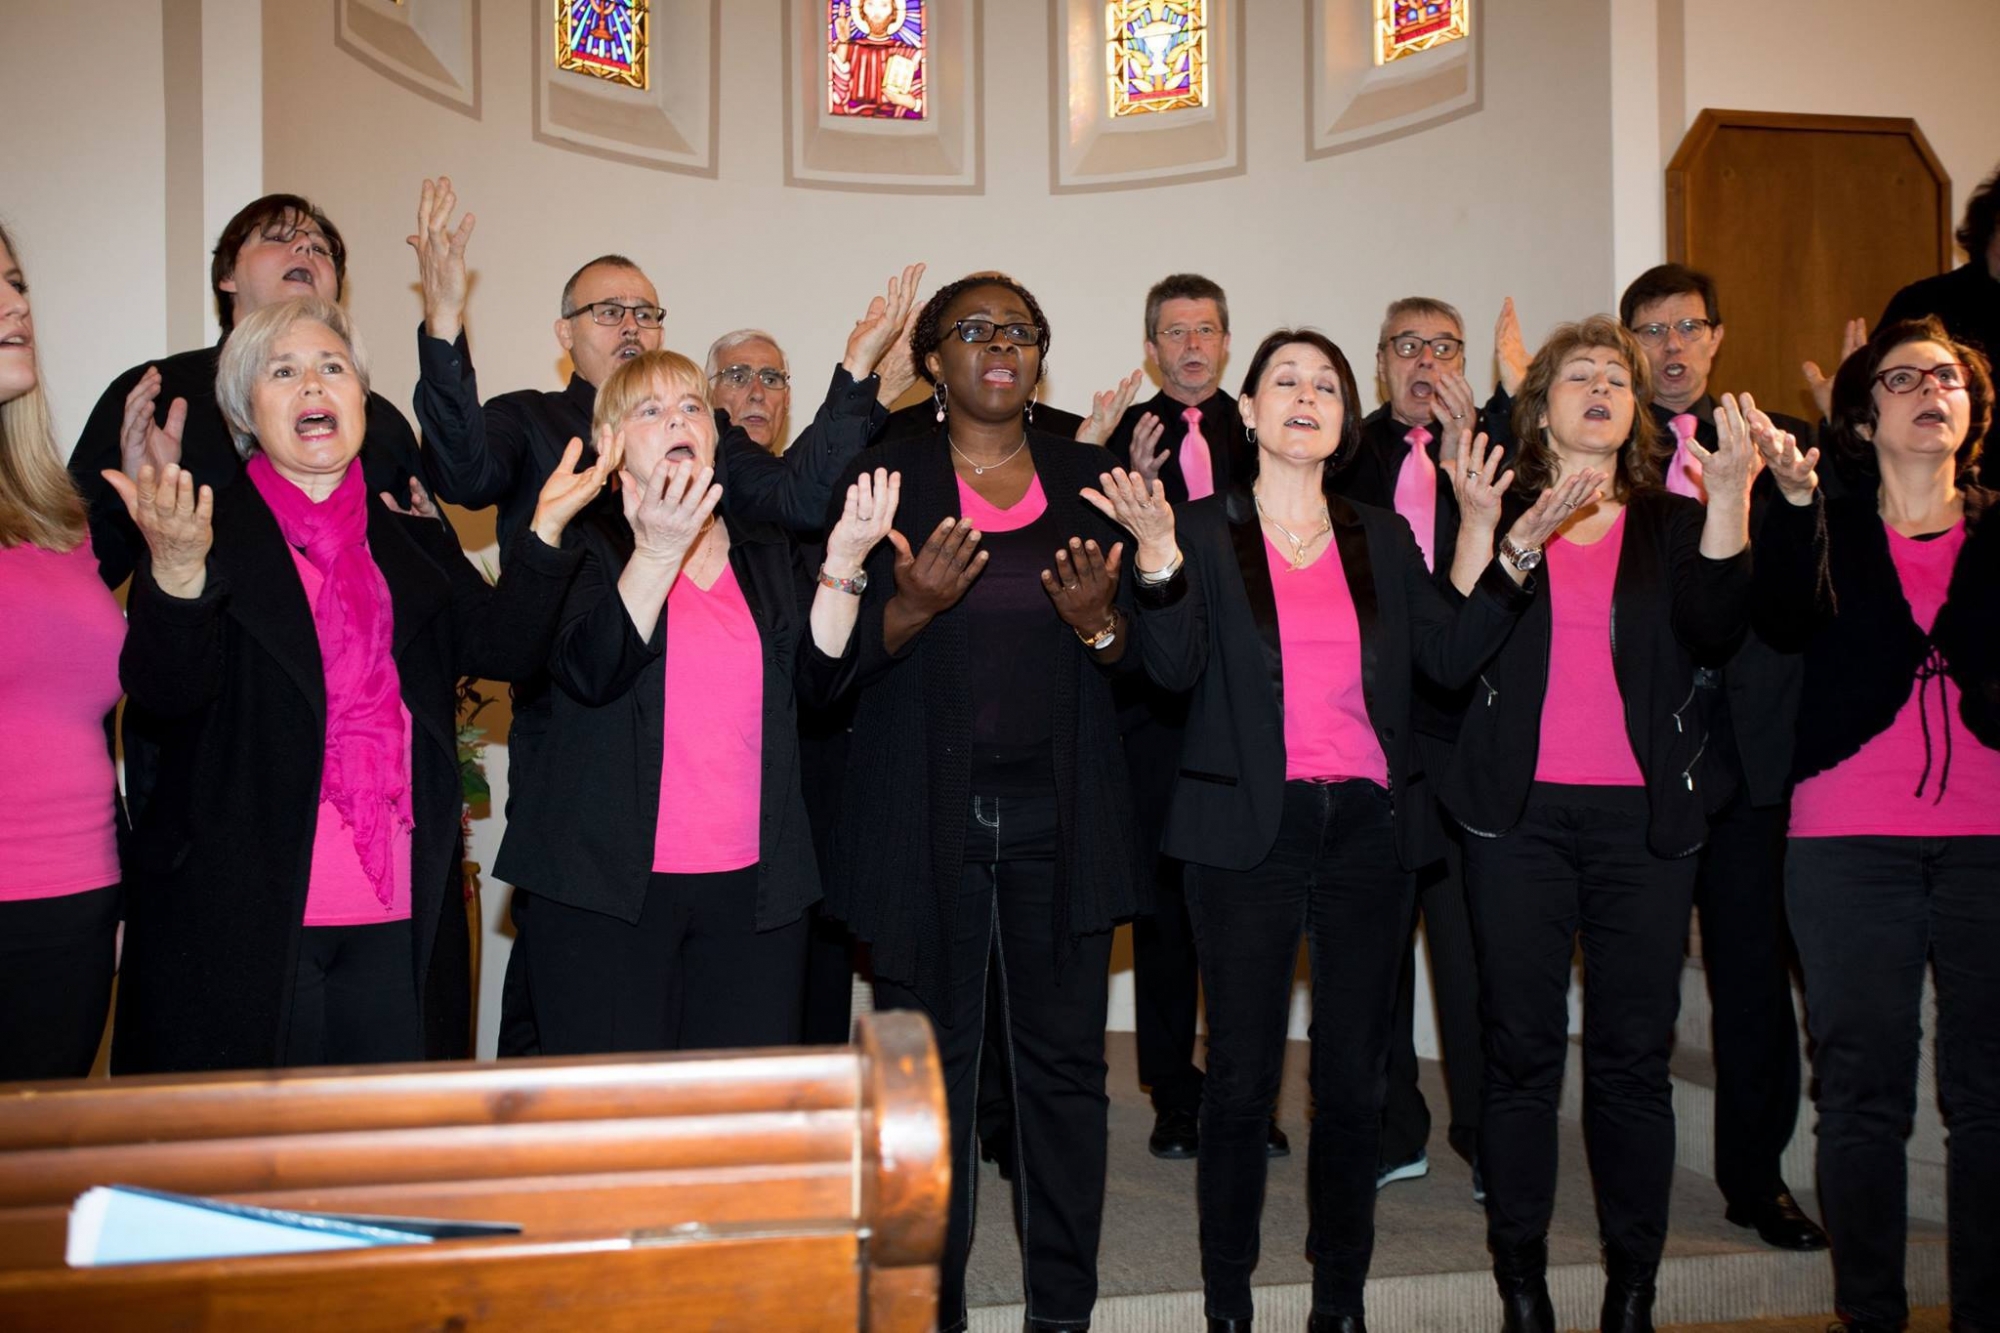 La chorale "Accroch'choeur" , basée à Gland, est spécialisée dans le gospel.